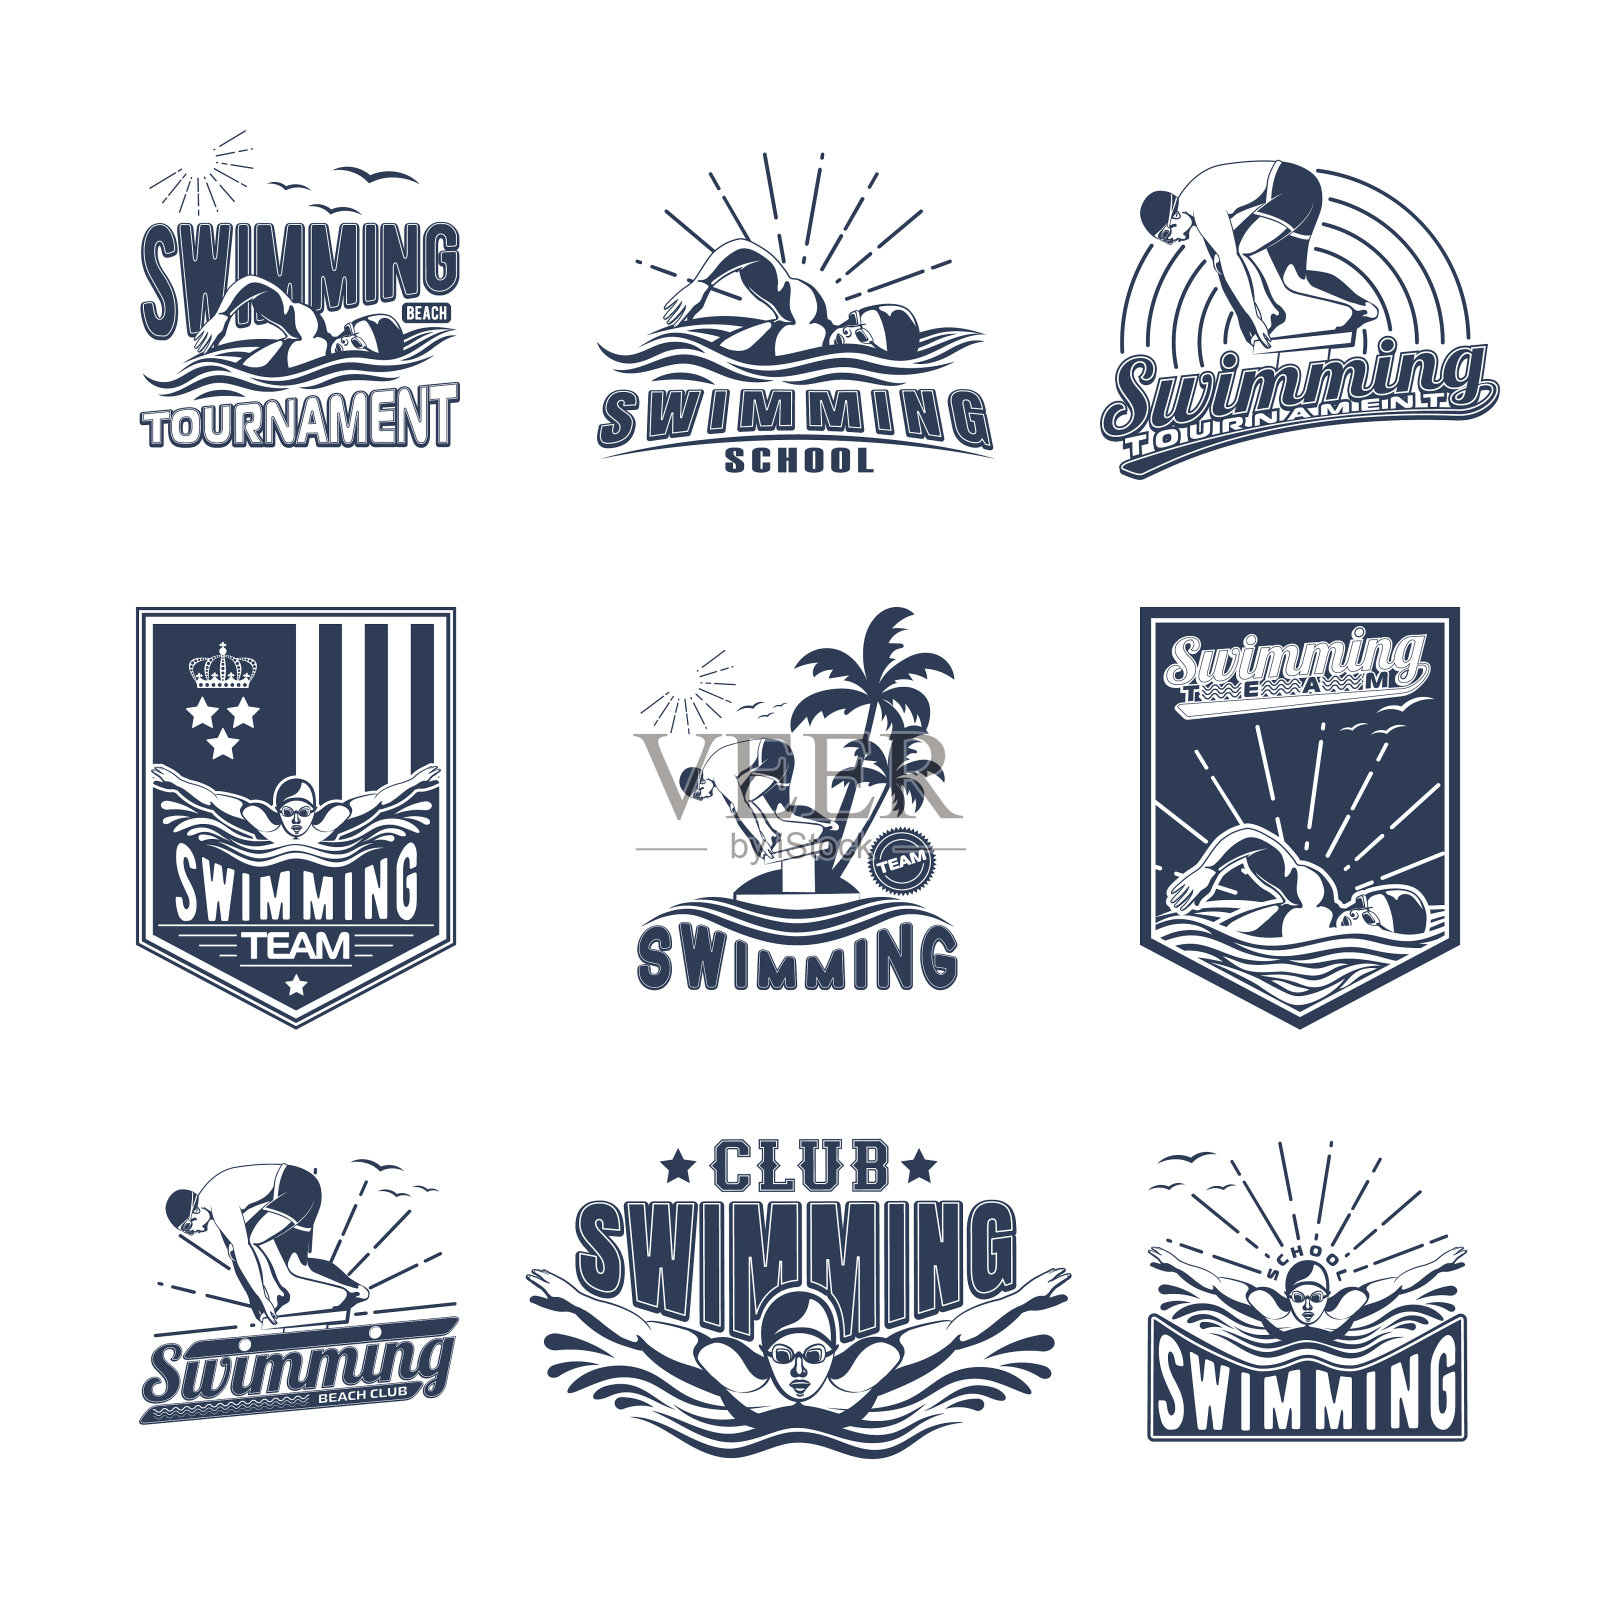 一套游泳徽章印刷在t恤,印刷产品和出版物在互联网上。矢量图插画素材